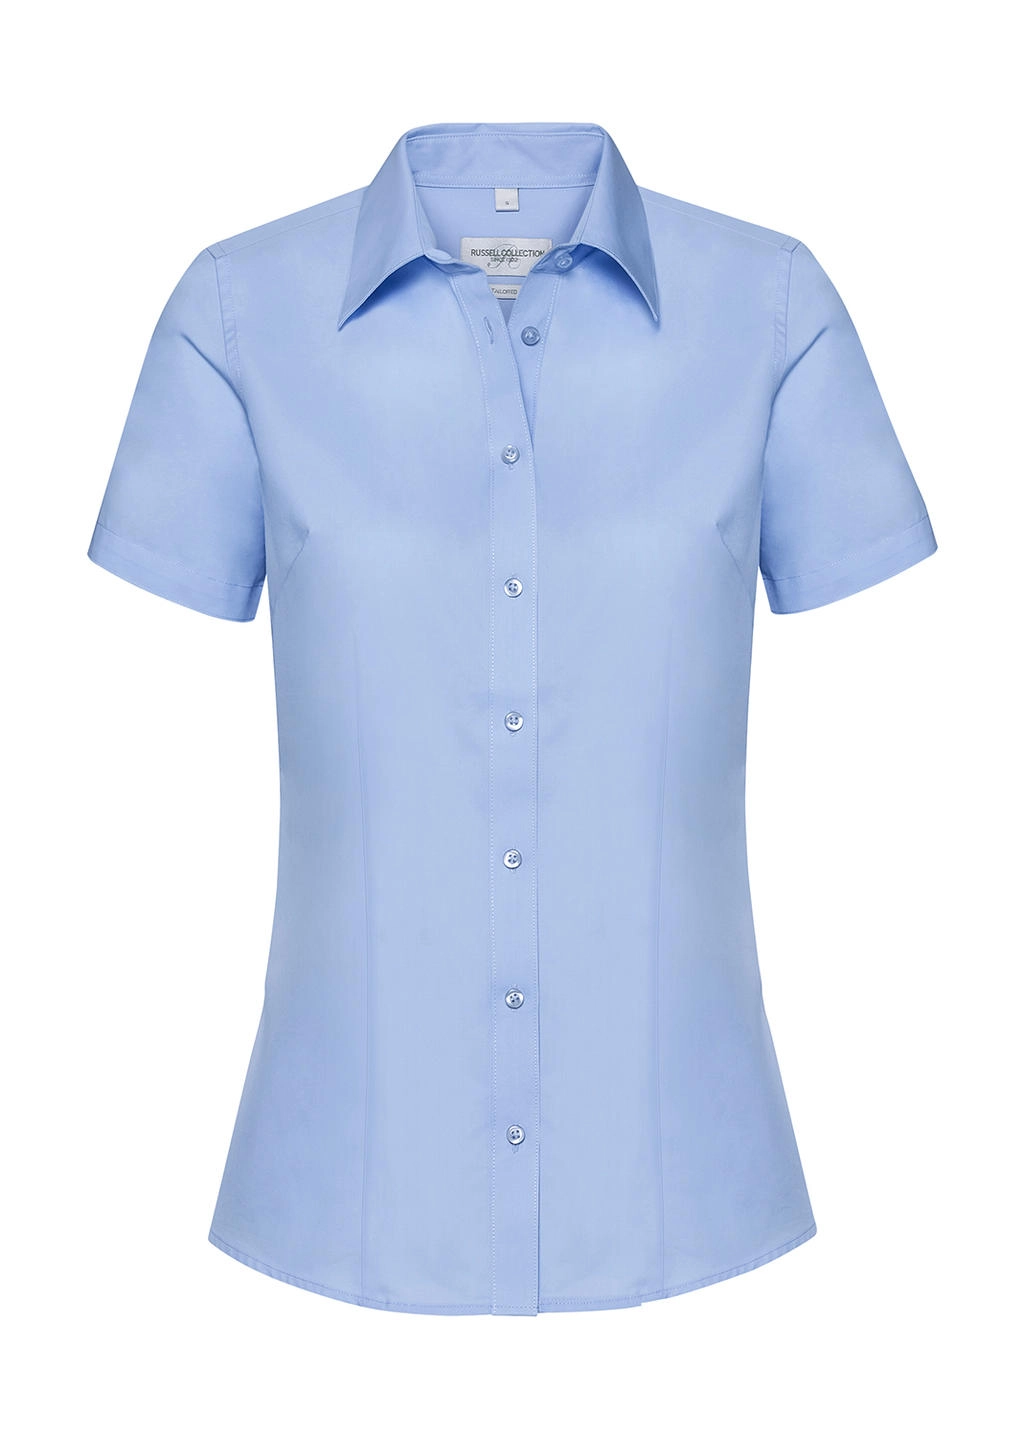 Ladies` Tailored Coolmax® Shirt zum Besticken und Bedrucken in der Farbe Light Blue mit Ihren Logo, Schriftzug oder Motiv.